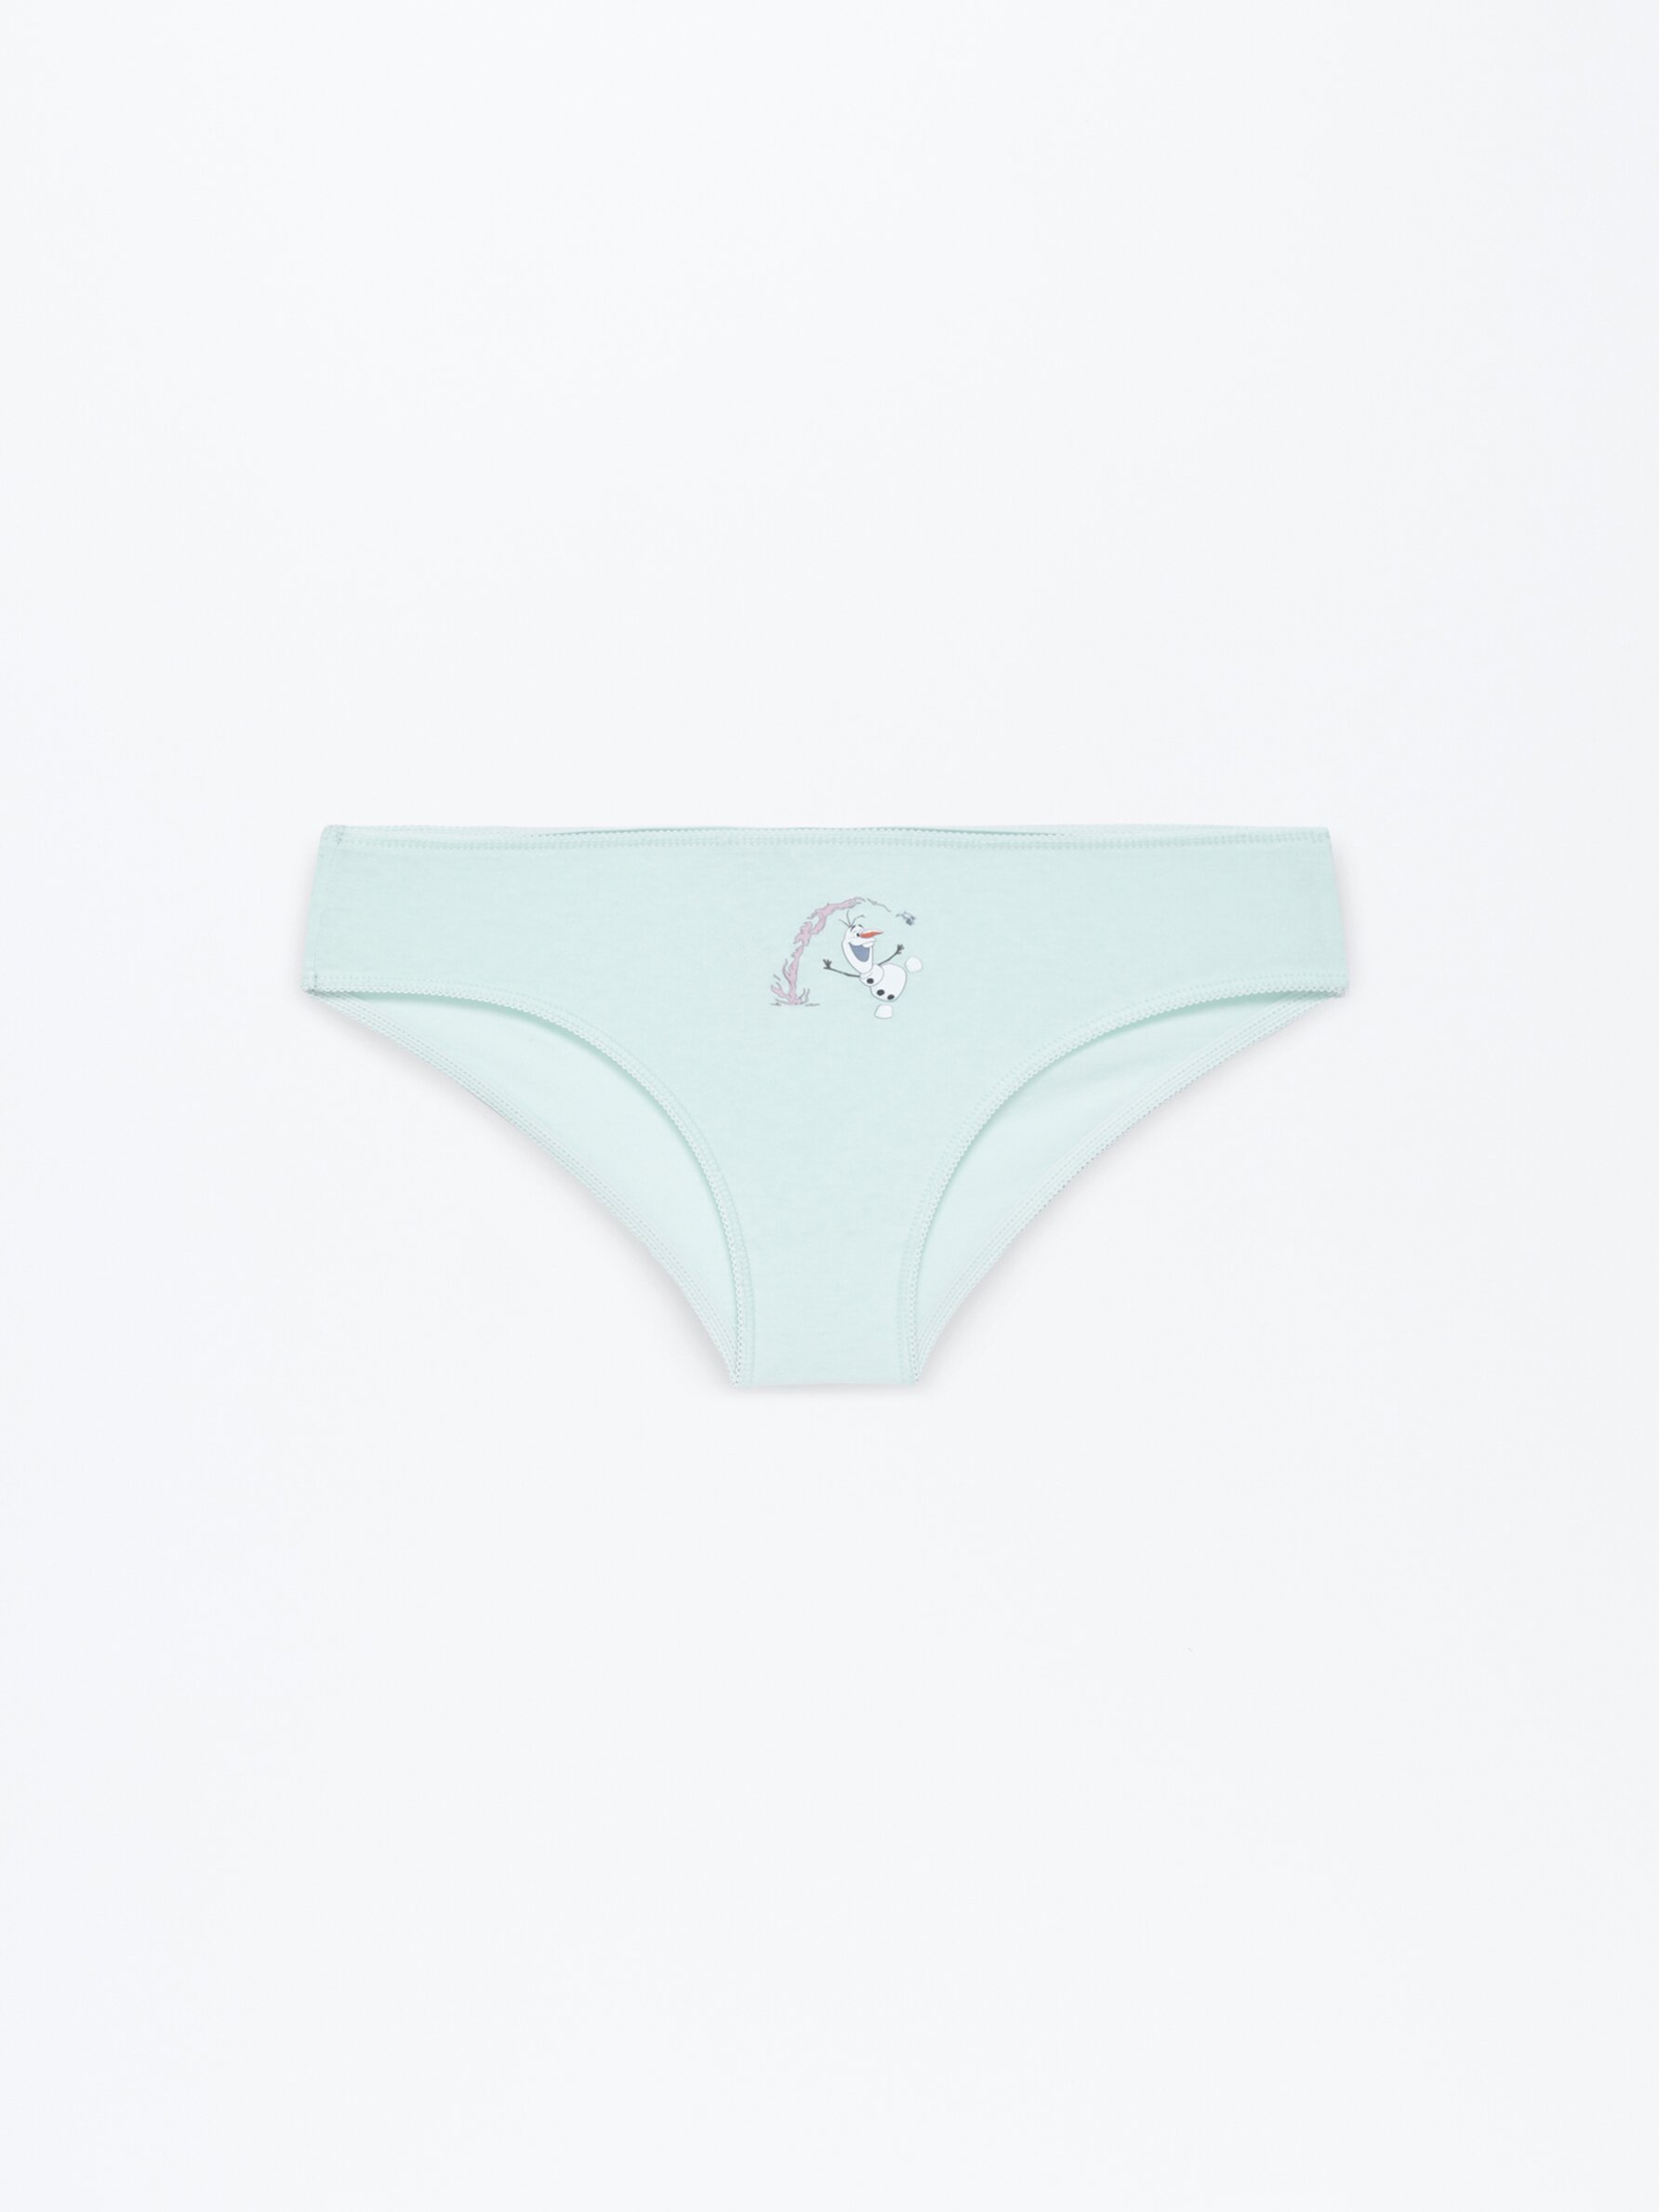 Pack of 5 Frozen ©Disney briefs - Underwear - CLOTHING - Girl